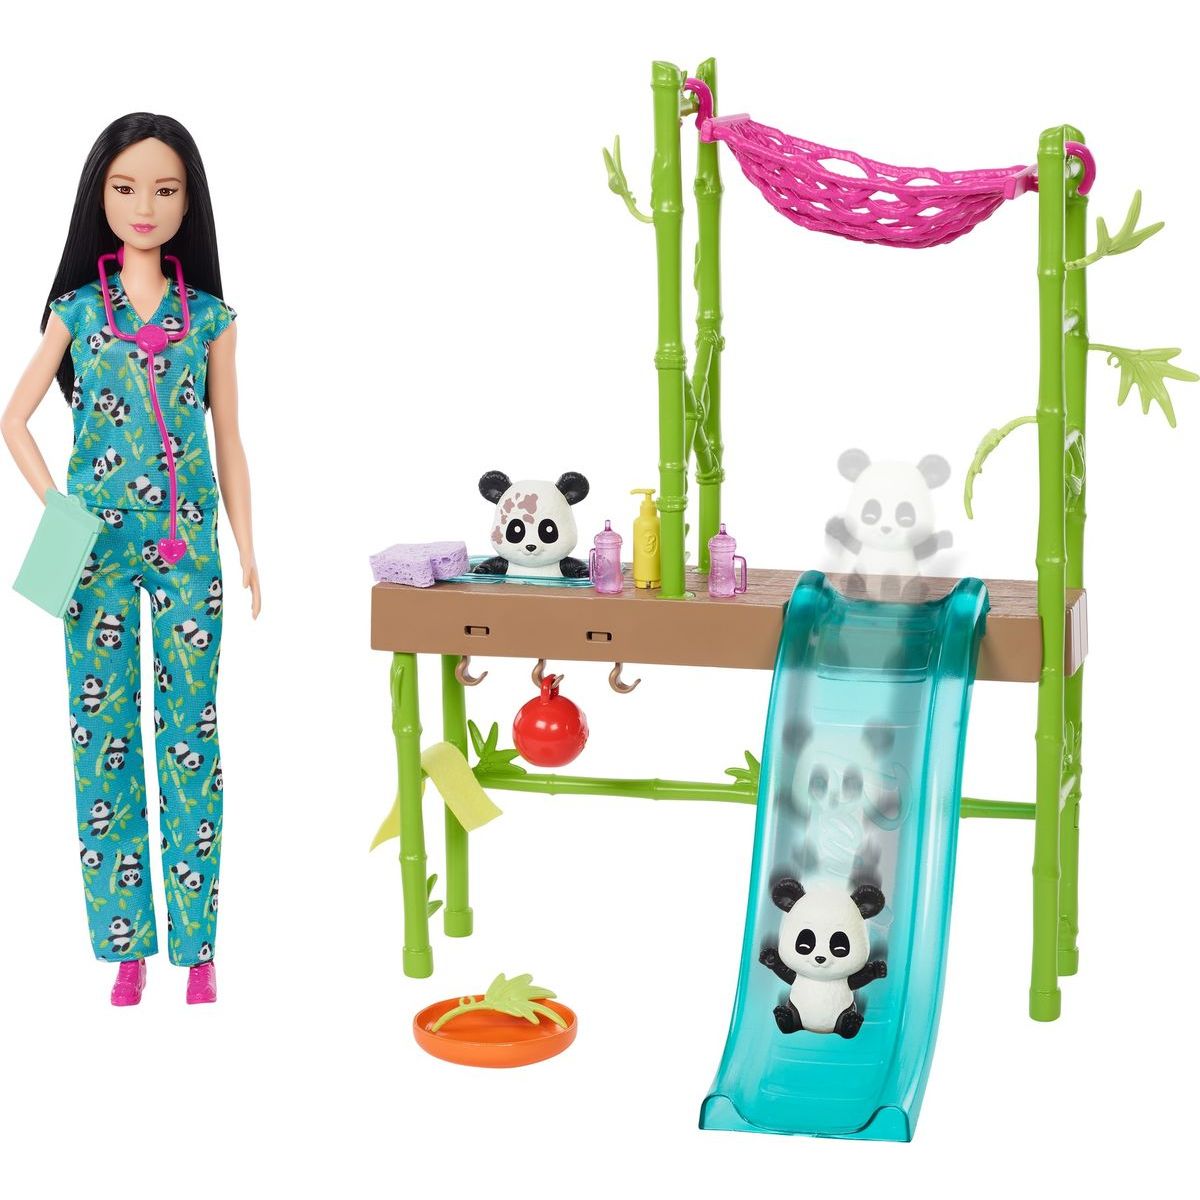 Mattel Barbie Záchrana pandy herný set